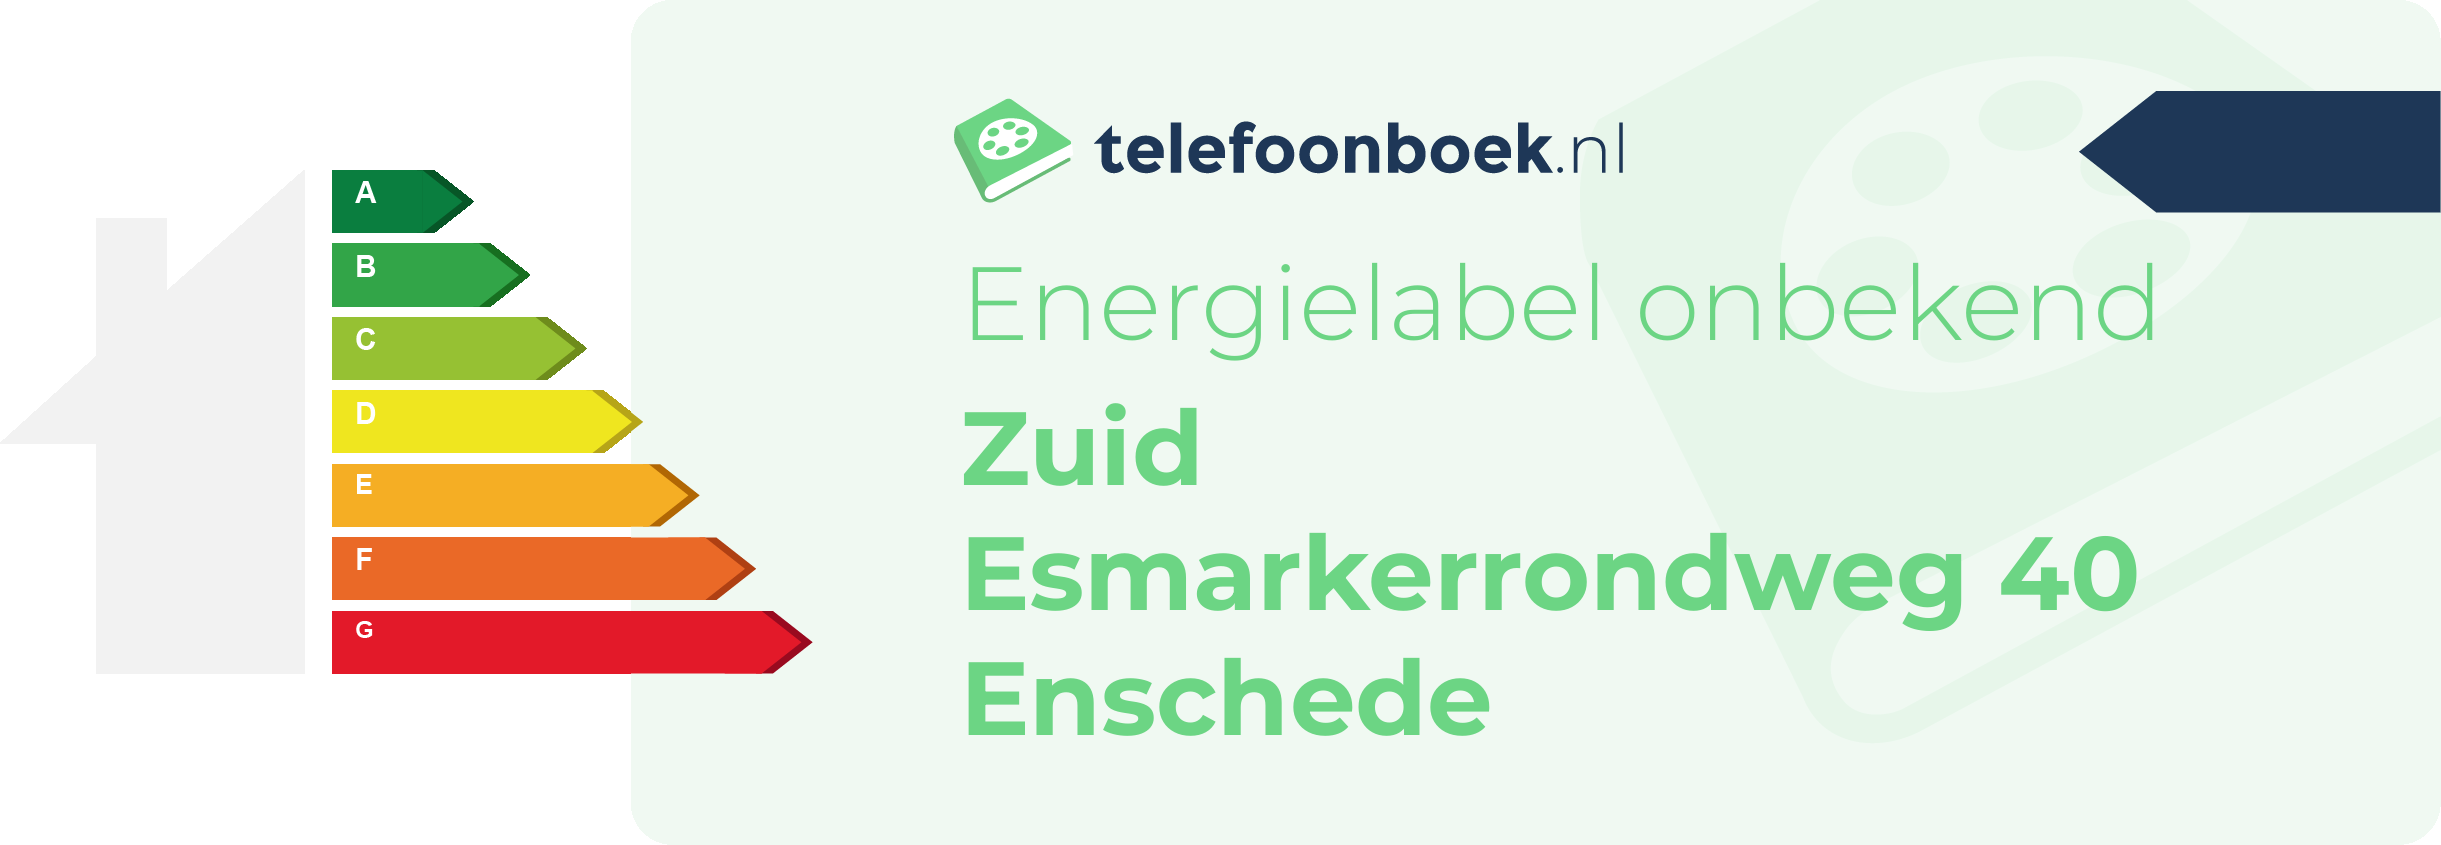 Energielabel Zuid Esmarkerrondweg 40 Enschede